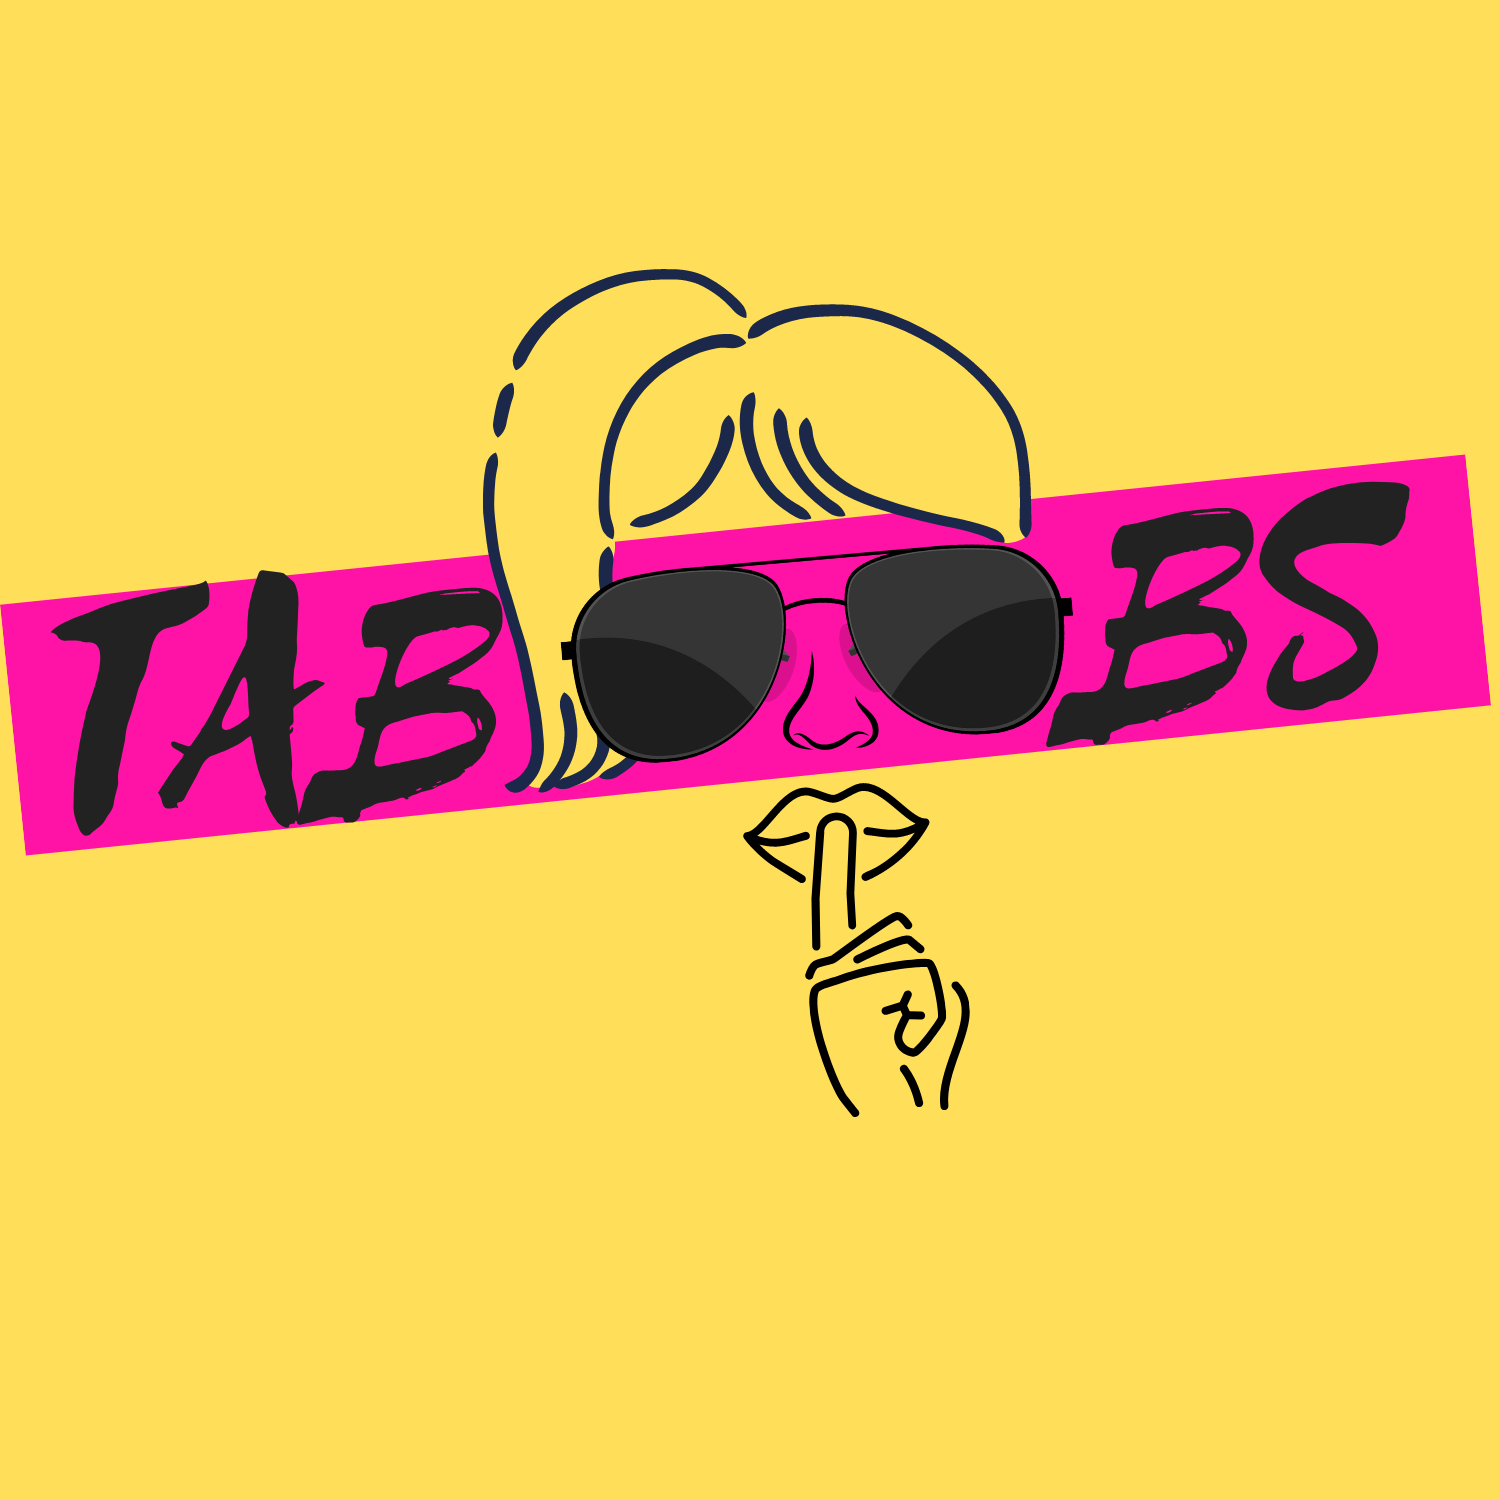 taboobs pod 